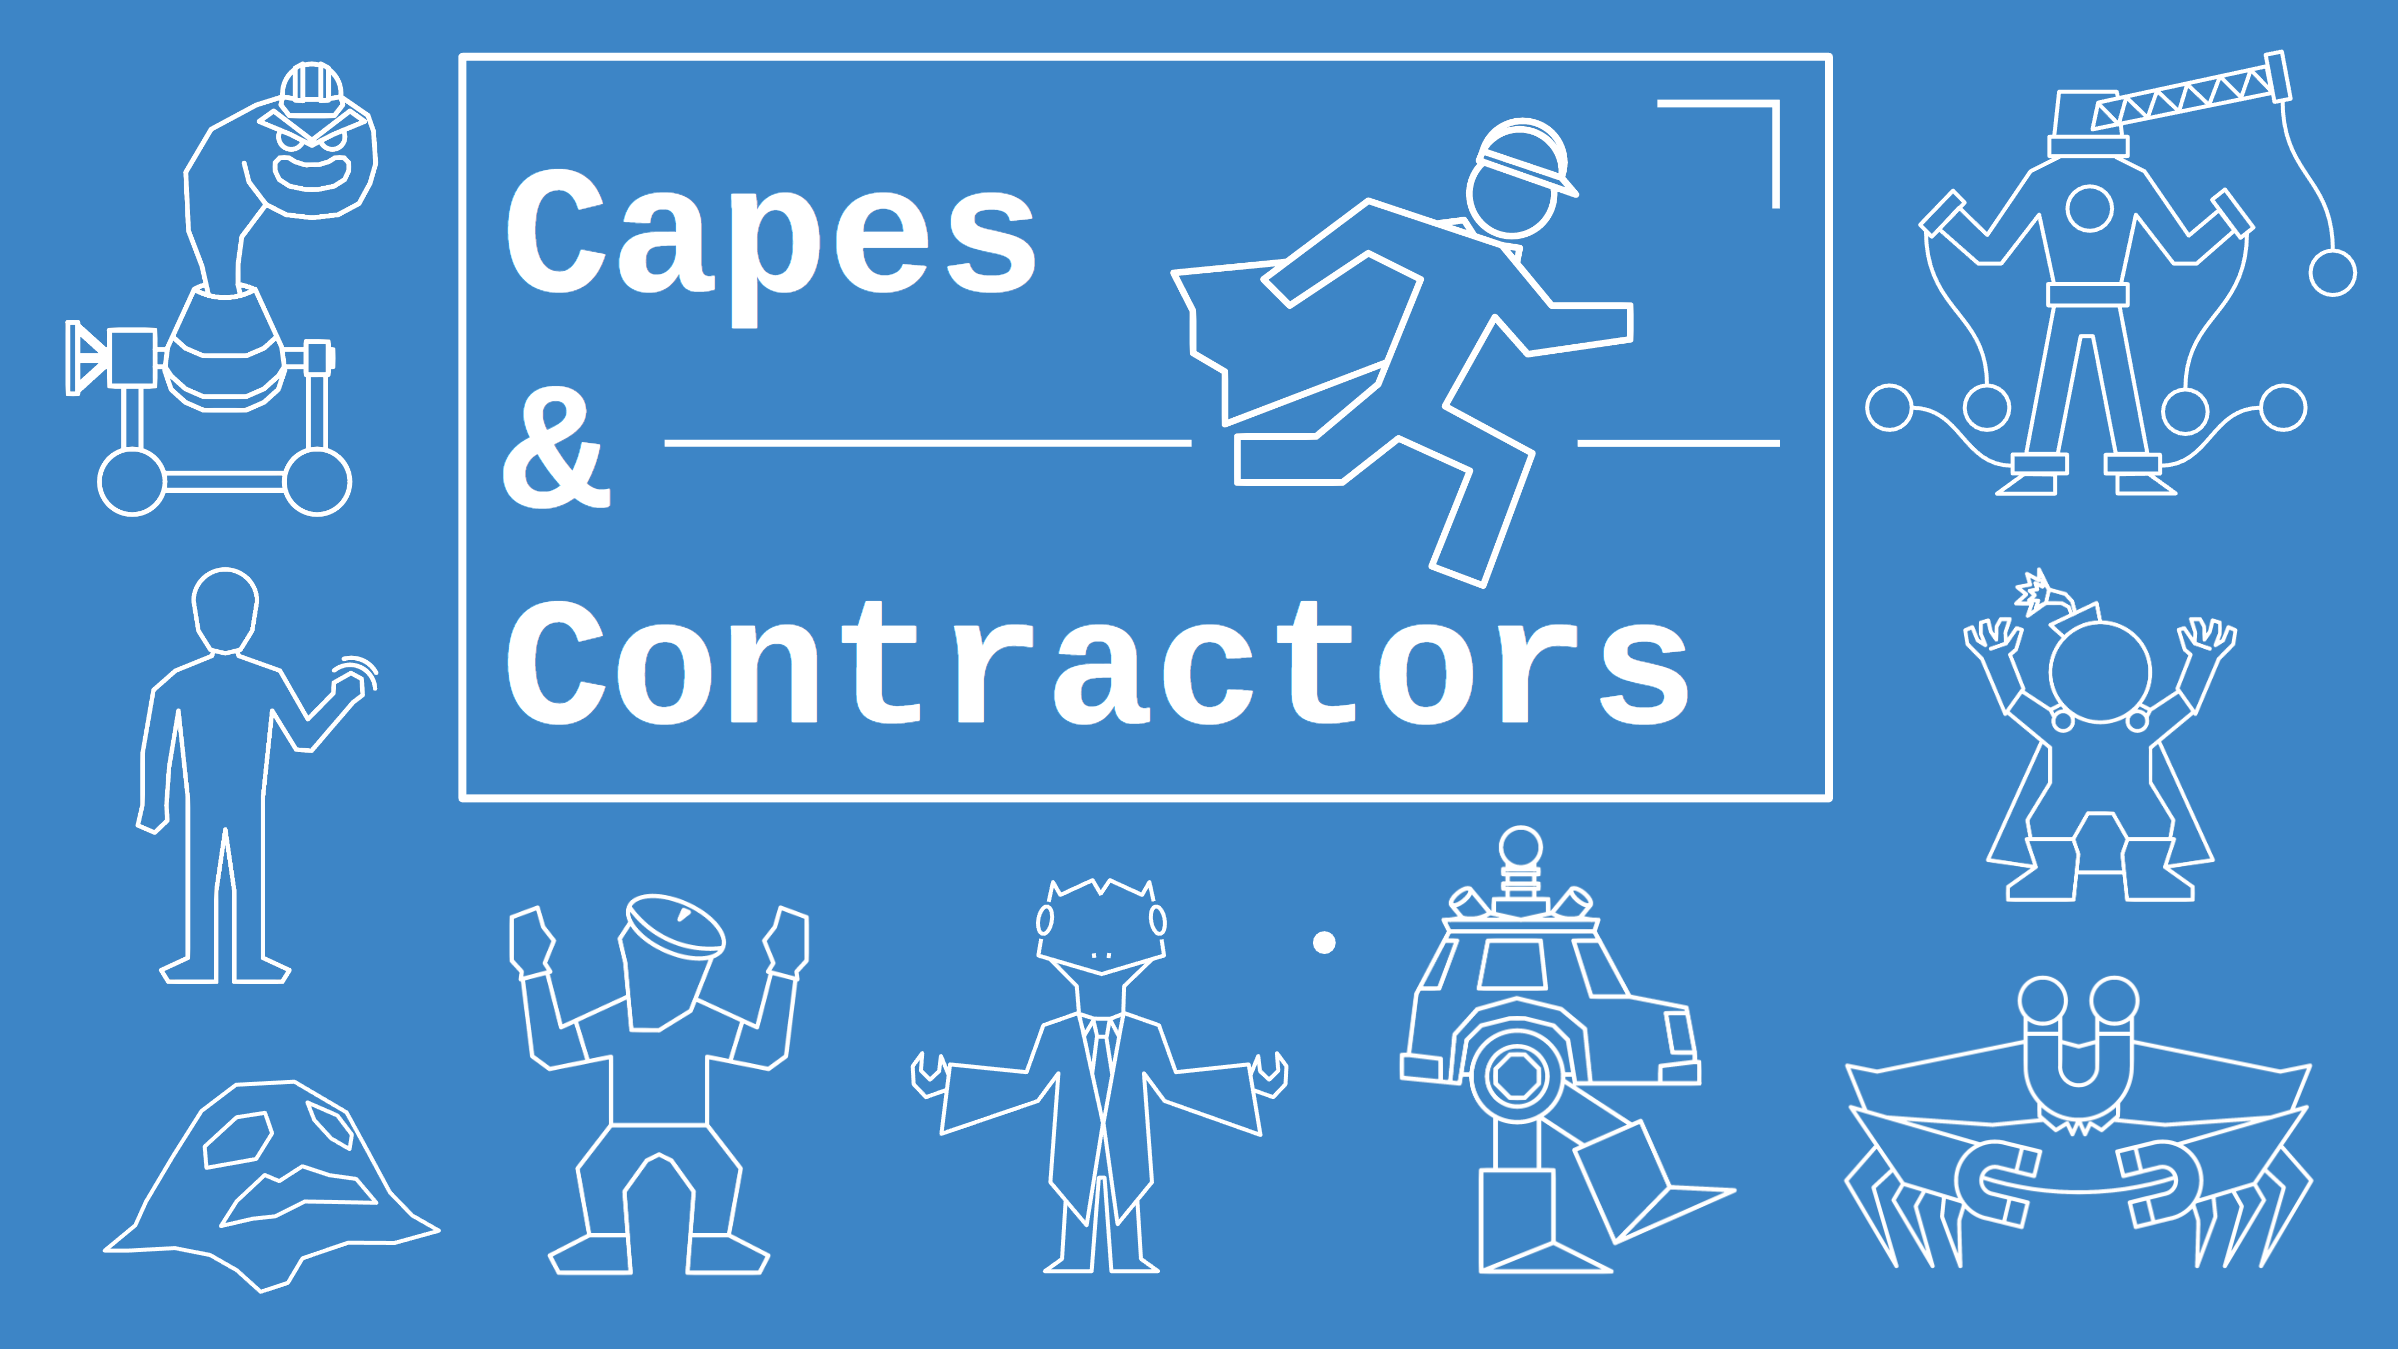 Capes and Contractors